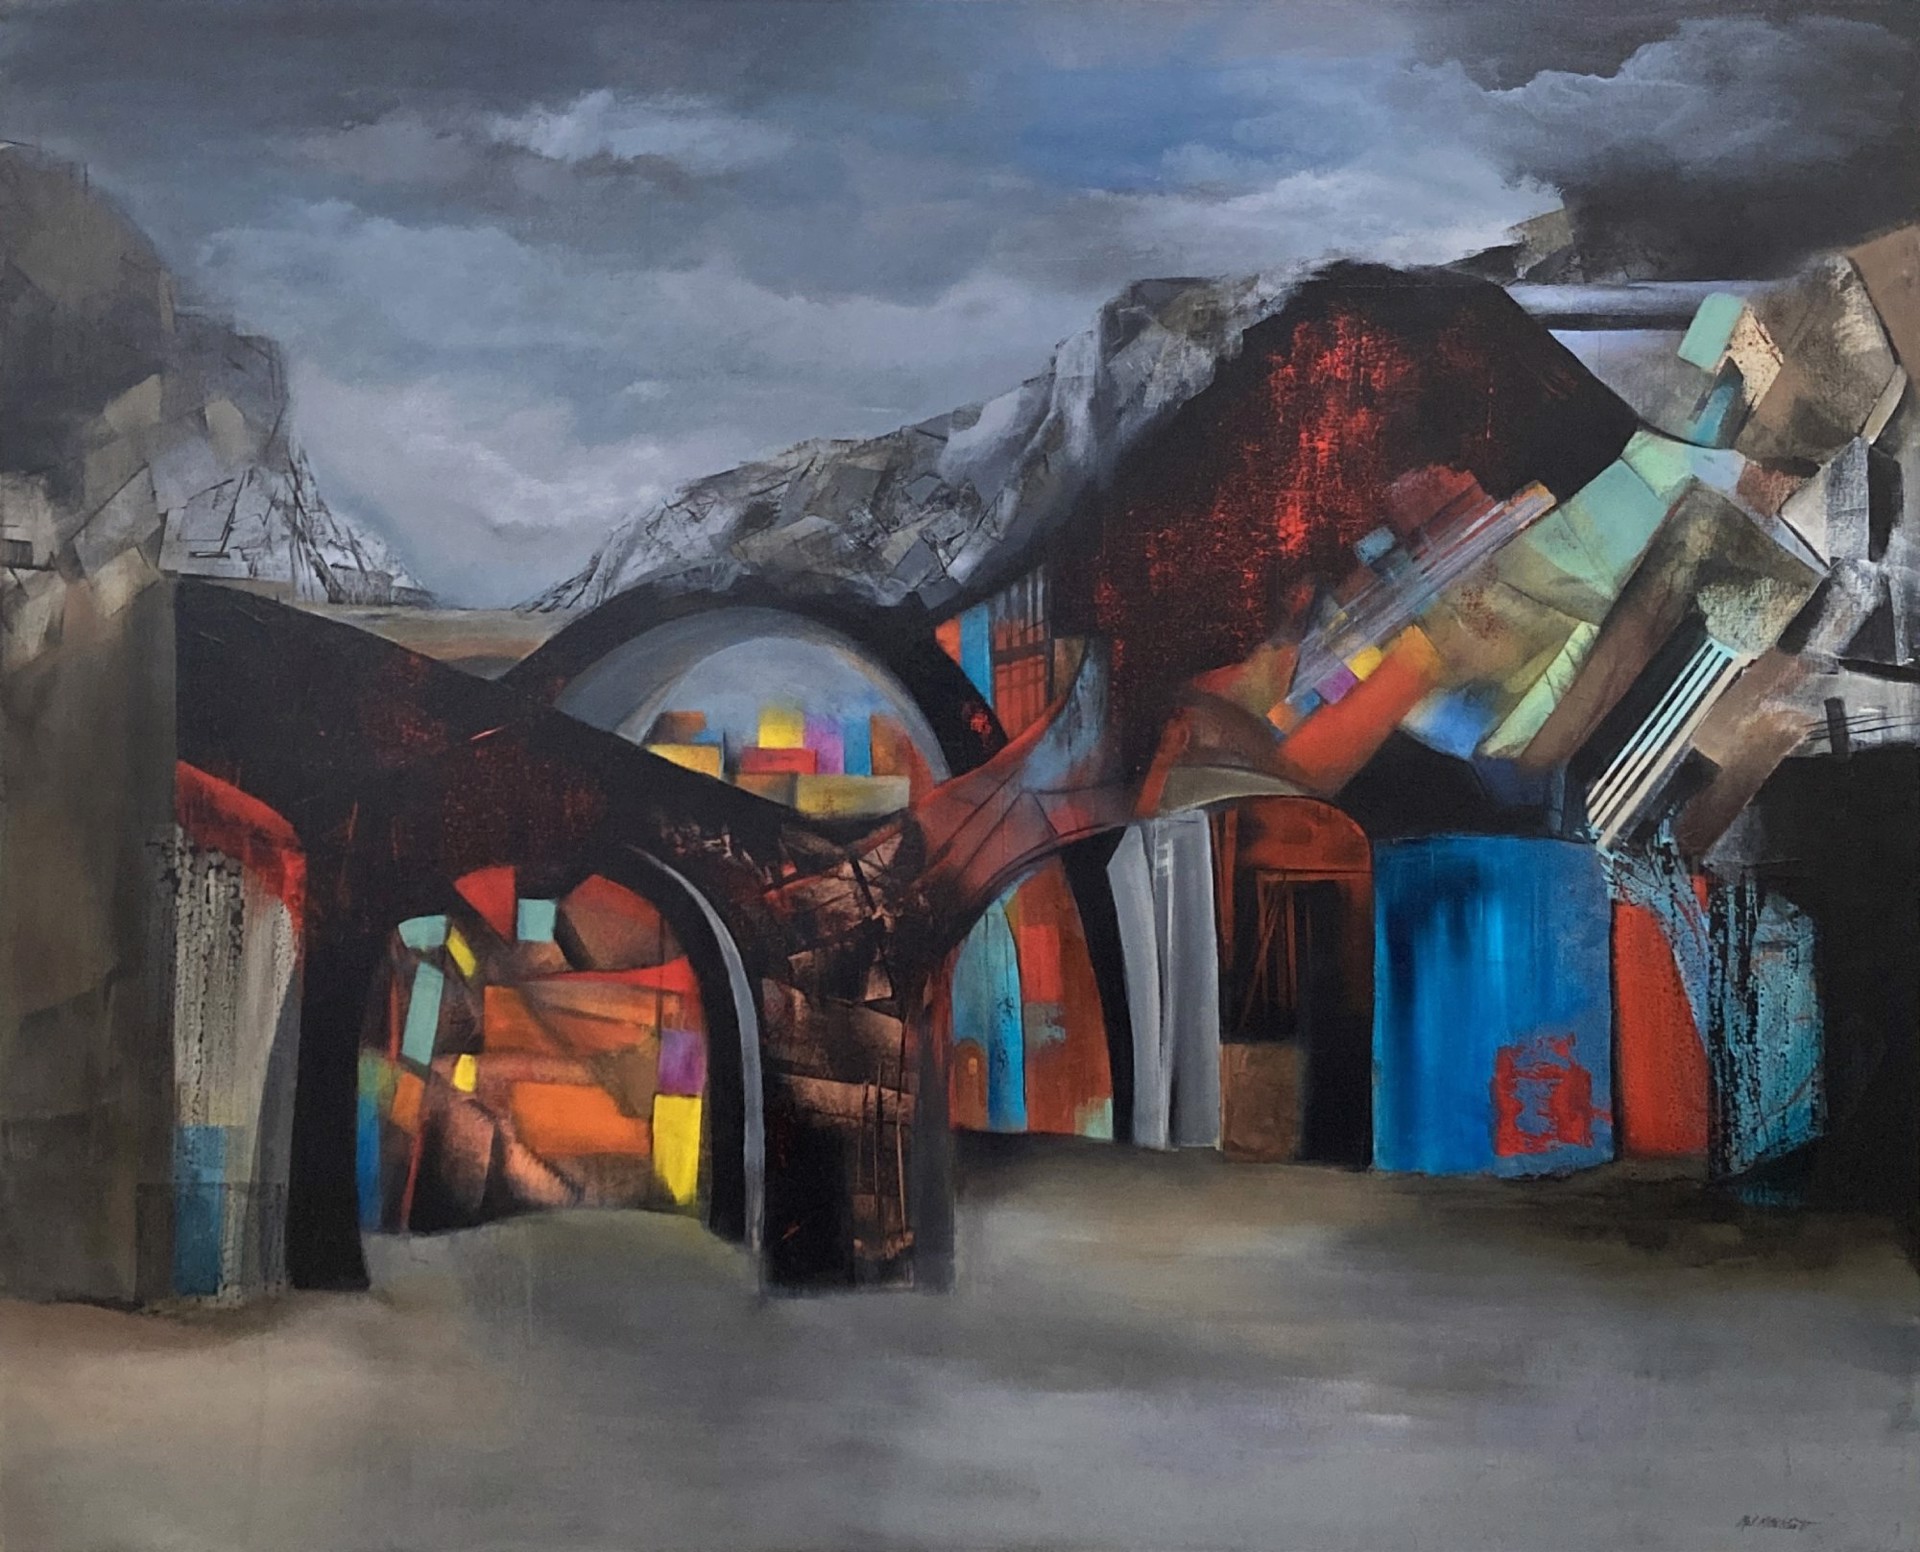 Midnight In Bisbee's Underground by Mary Ellen Mittelstaedt